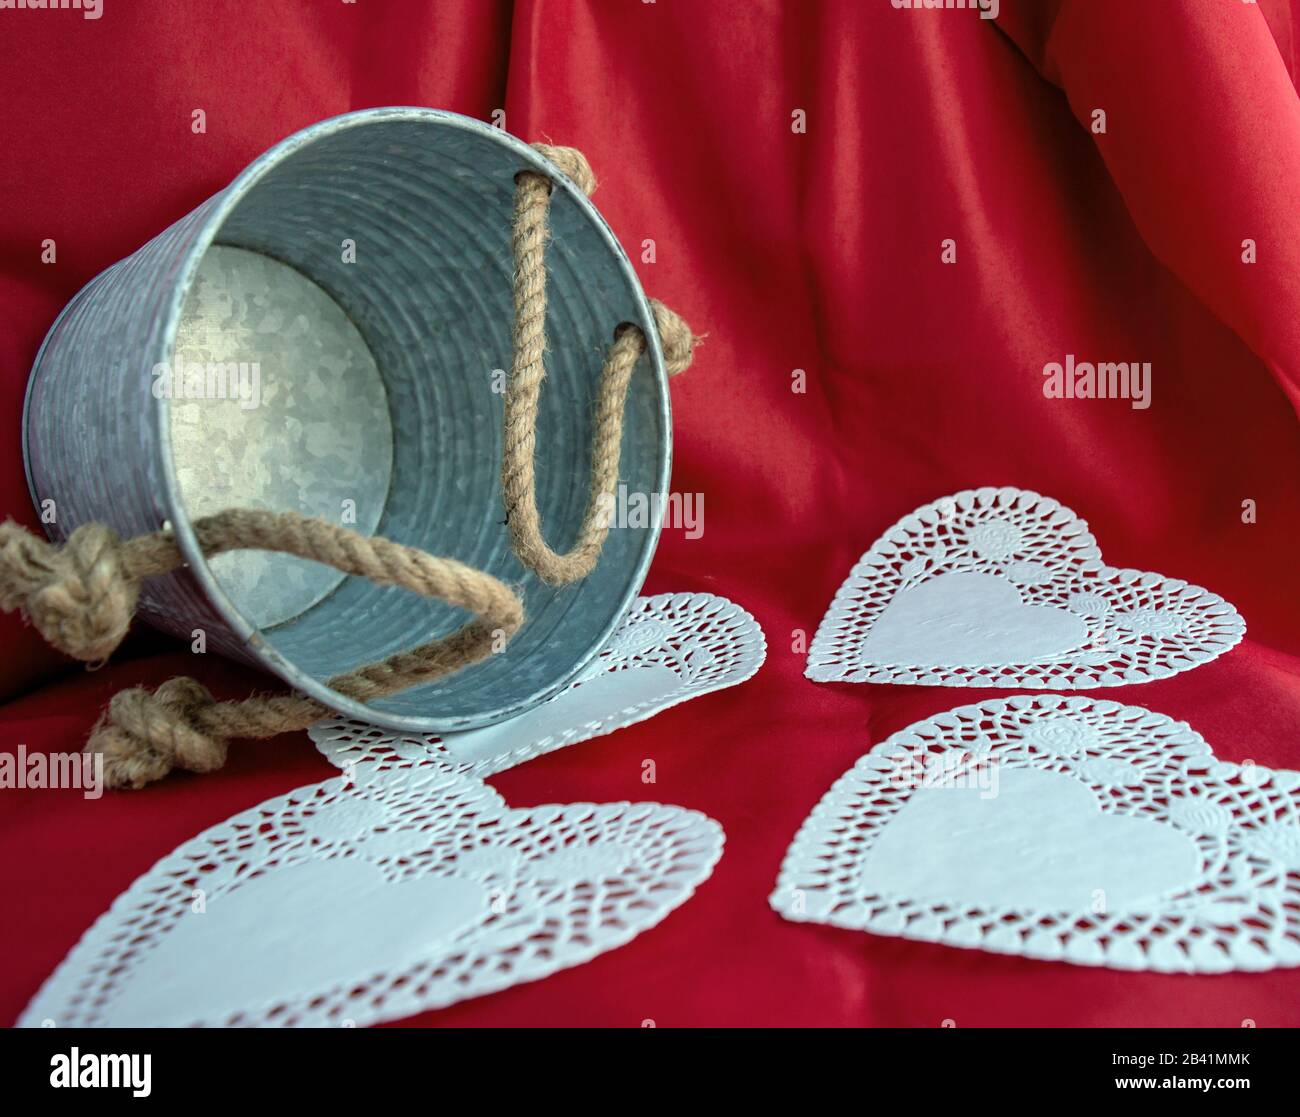 Un seau en étain, des poignées de corde, des coeurs blancs et un fond rouge doux représentant l'amour de la Saint-Valentin. Effet bokeh. Banque D'Images